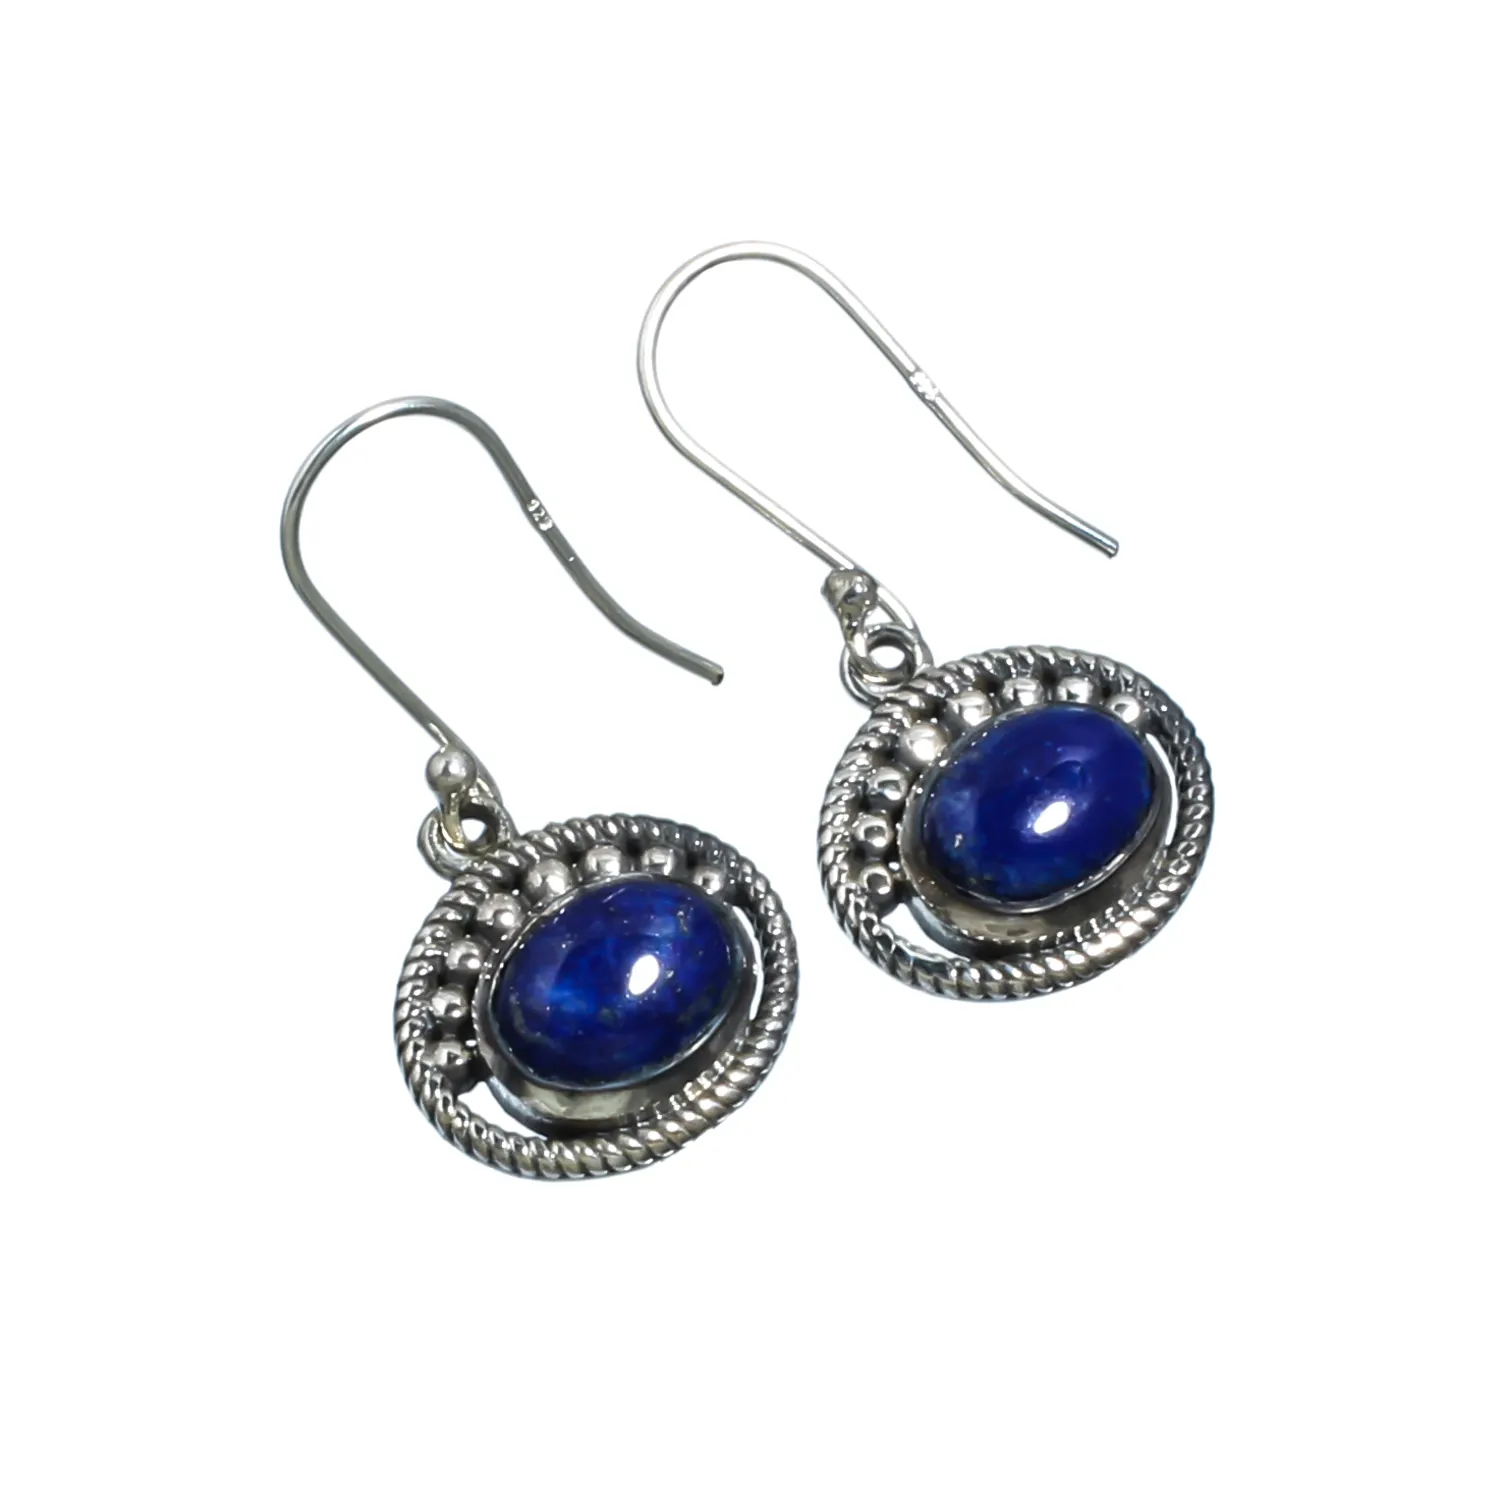 Traditionele Mode Vrouwen Sieraden Drop Lapis Lazuli Edelstenen Oorbel Goed Uitziende 925 Zilveren Hoepel Oorbel Voor Verjaardag